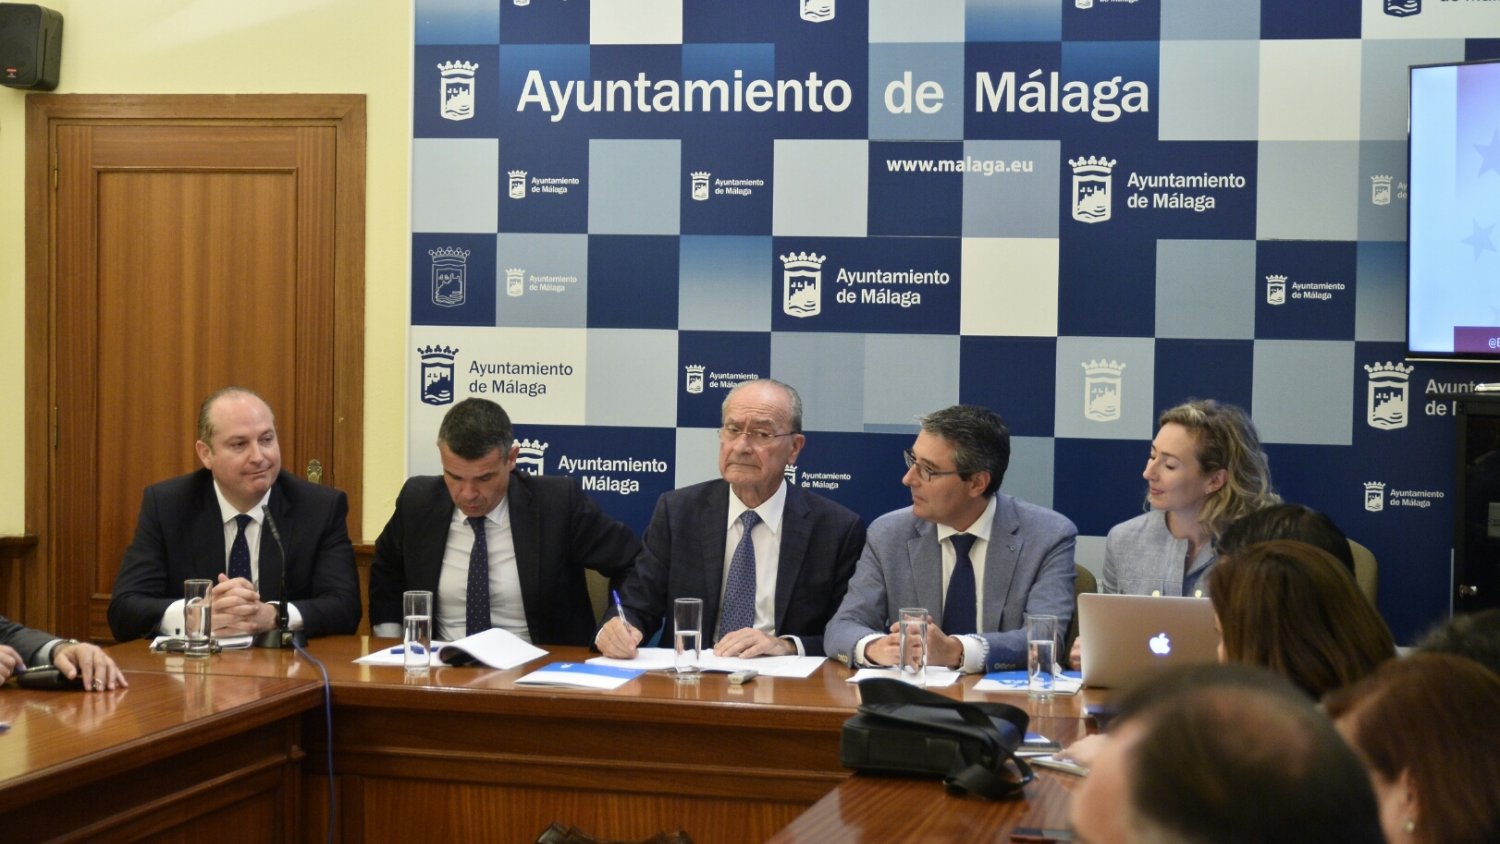 EBAN Málaga 2017 Congress reunirá en Málaga a más de medio millar de participantes